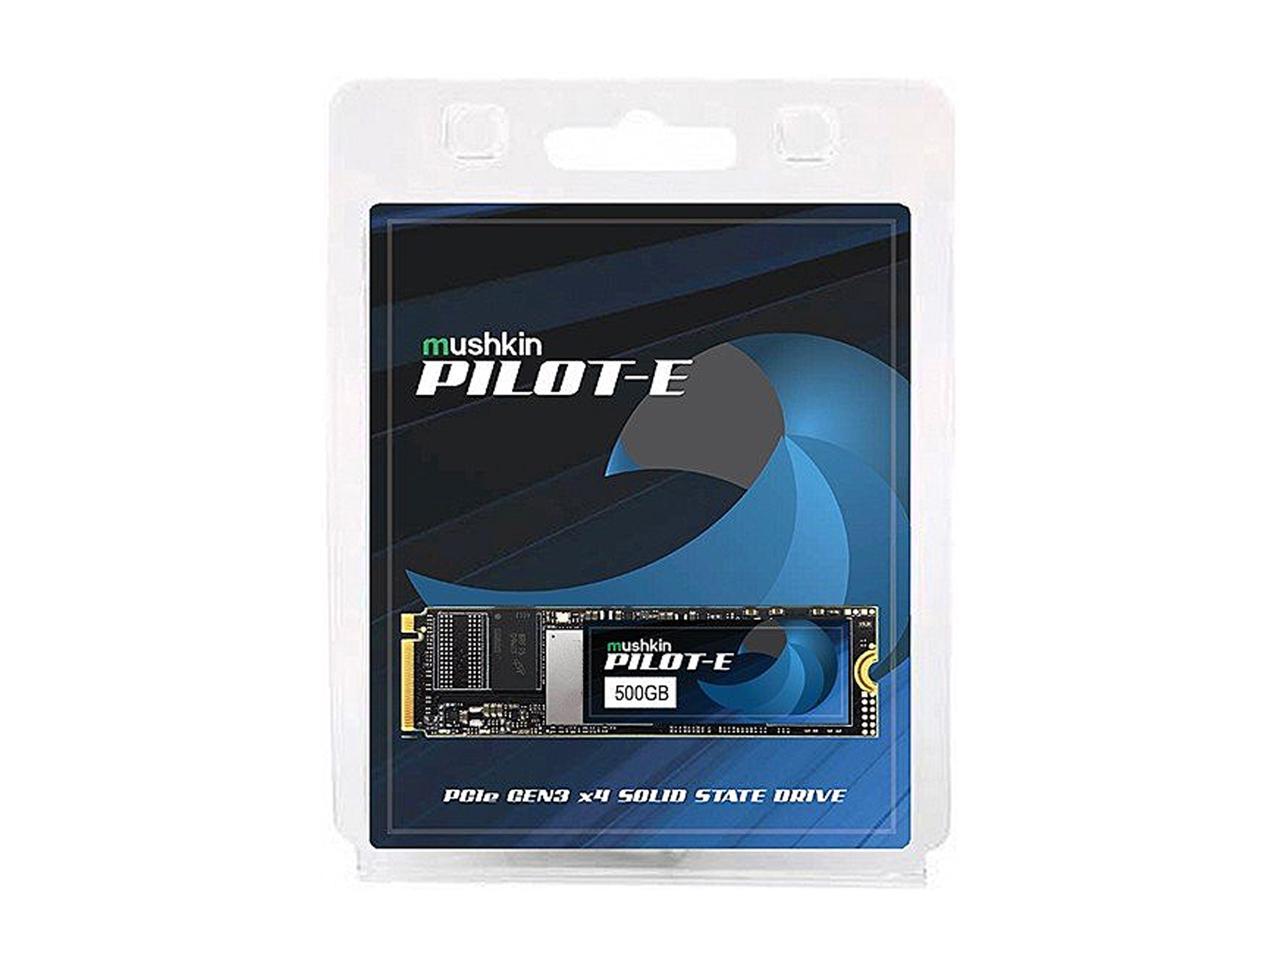 Mushkin Pilot-E M.2 2280 500GB PCIe Gen3 x4 NVMe 1.3 3D TLC Internal Solid State Drive (SSD) MKNSSDPE500GB-D8